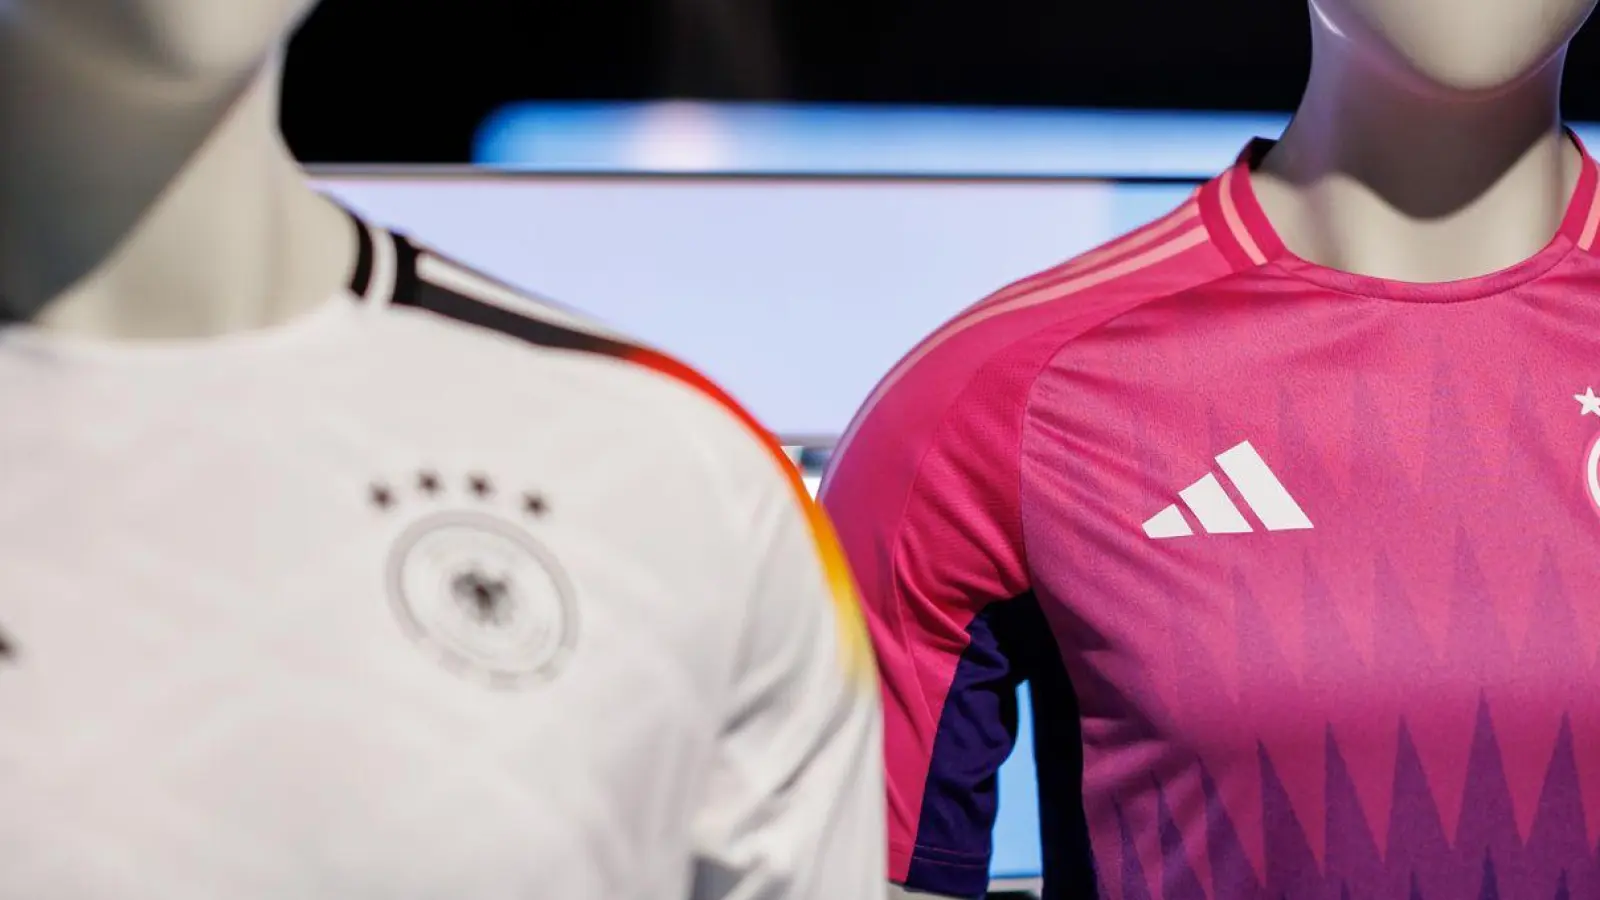 Wurde kontrovers diskutiert: die Farbwahl des neuen Pink und lilafarbenen Auswärtstrikots der deutschen Fußballnationalmannschaft (r). (Foto: Daniel Karmann/dpa)